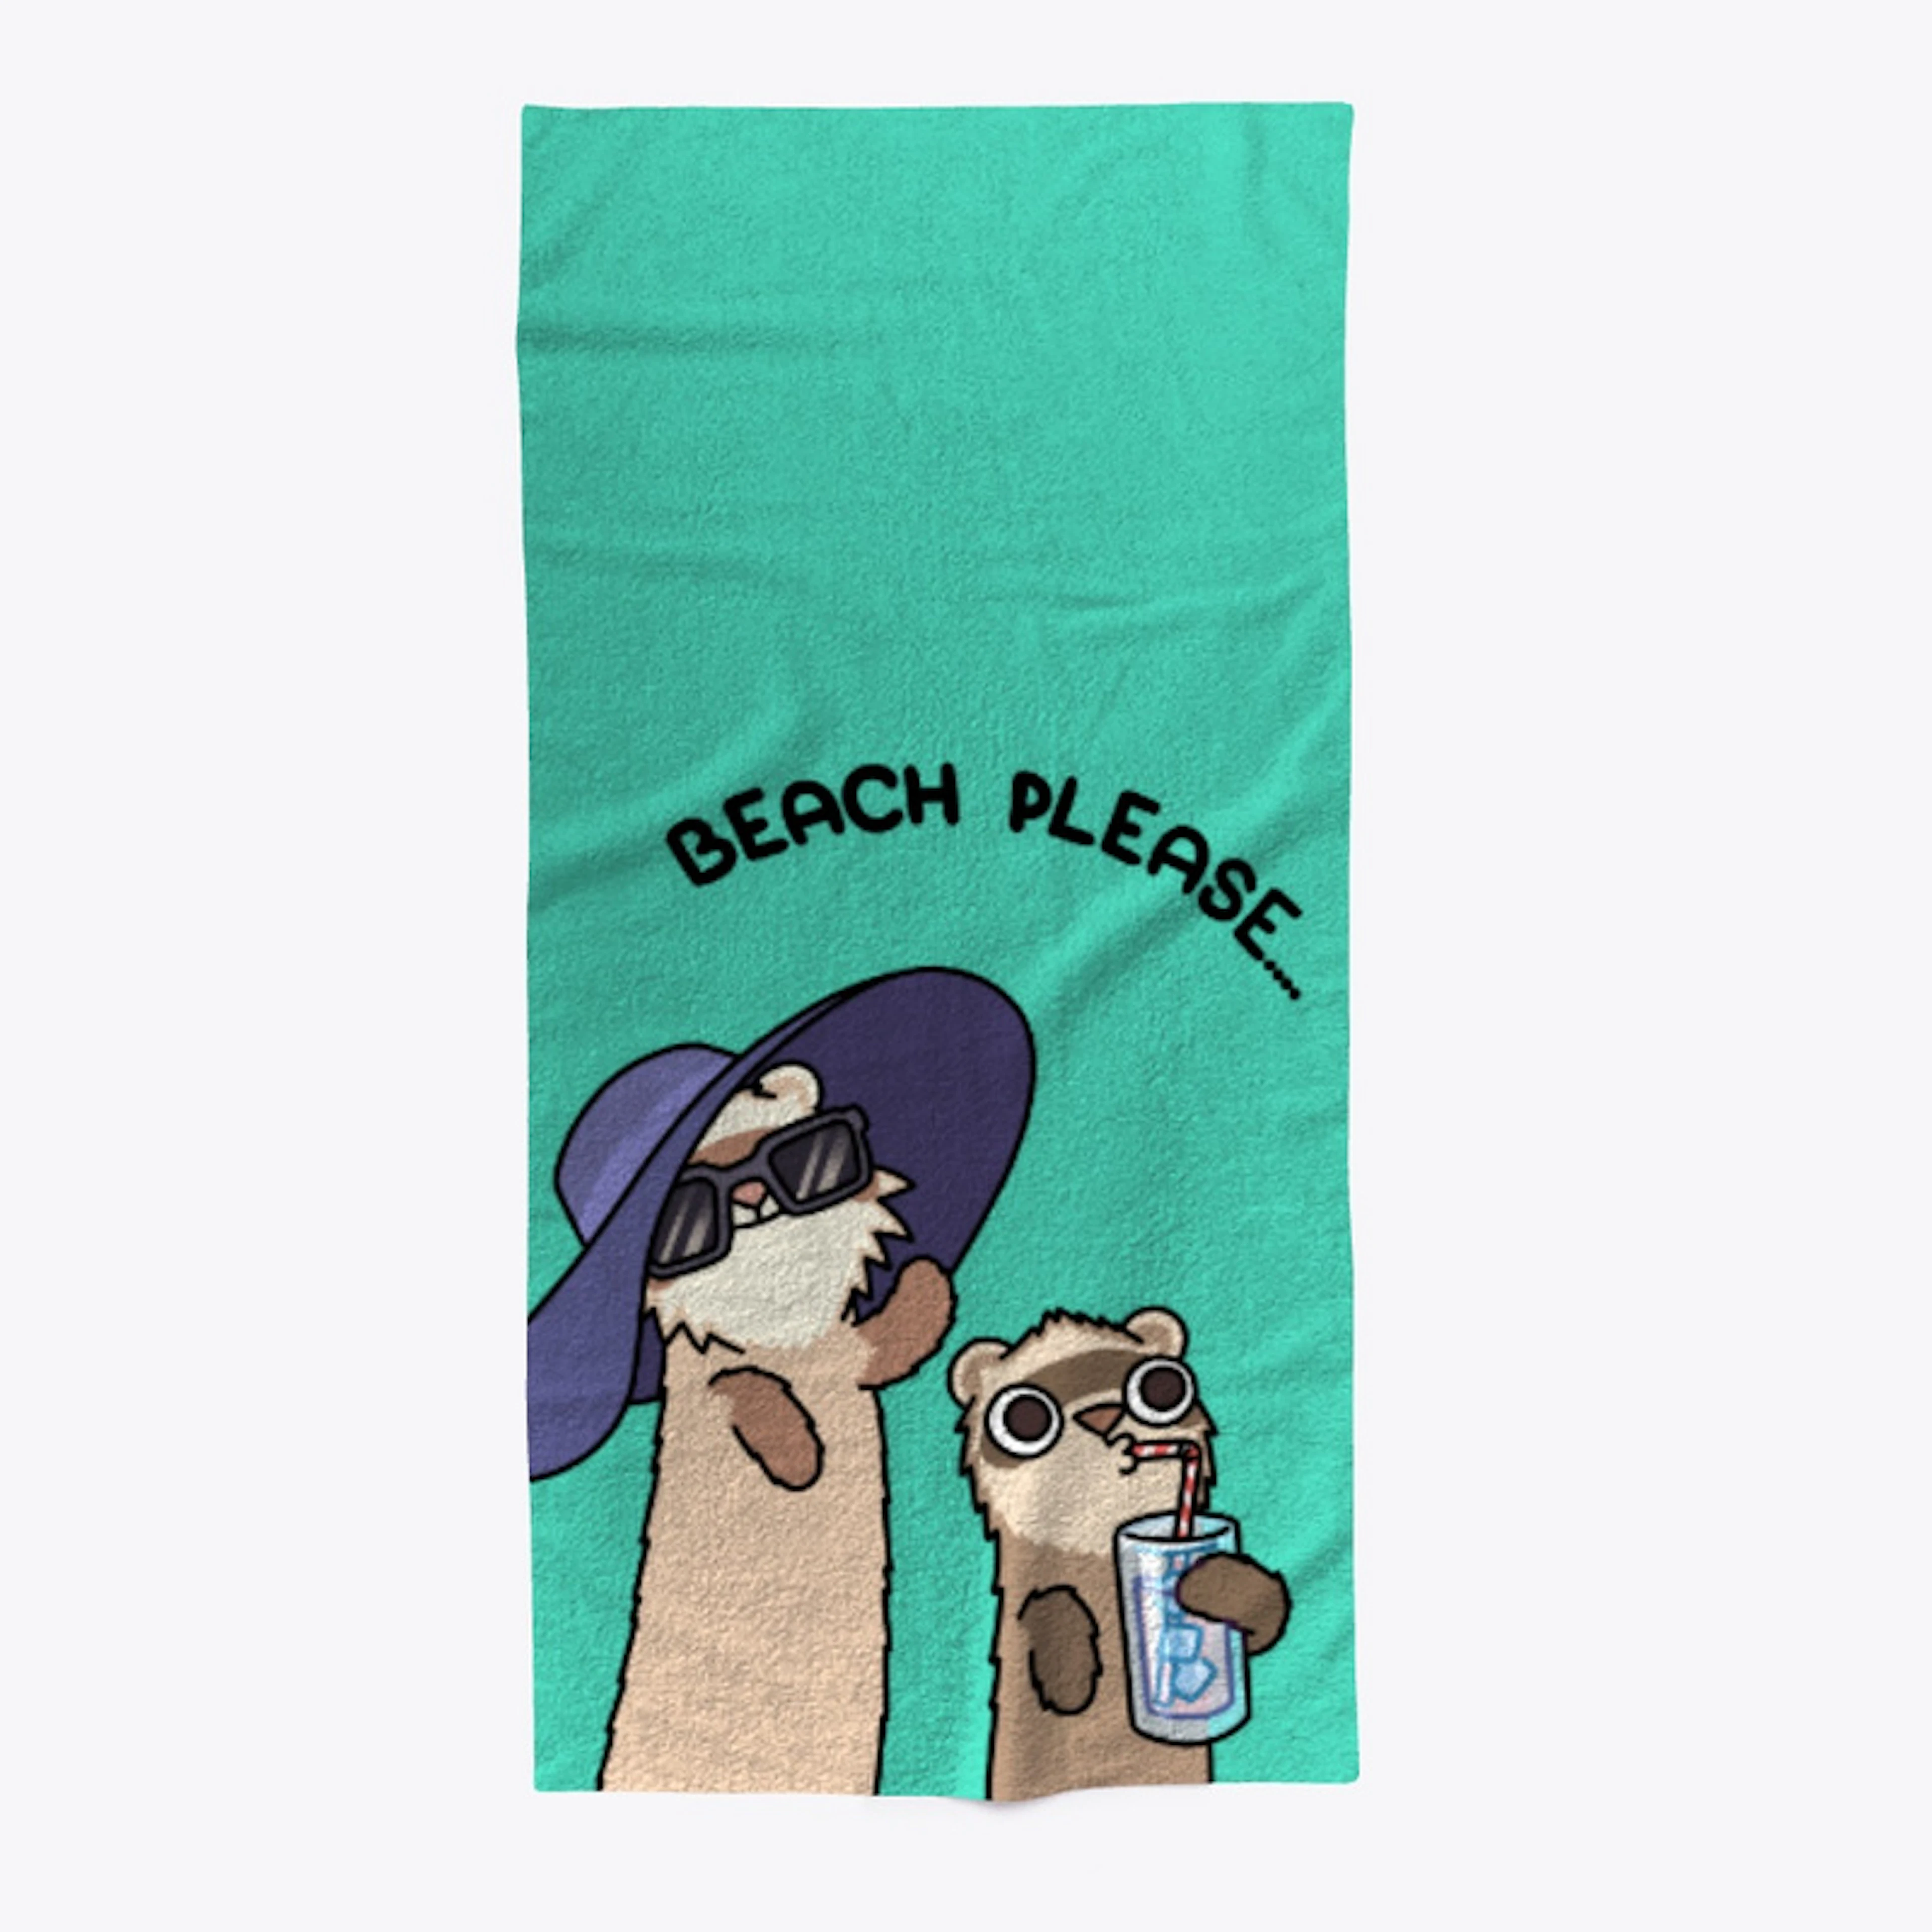 Beach please...